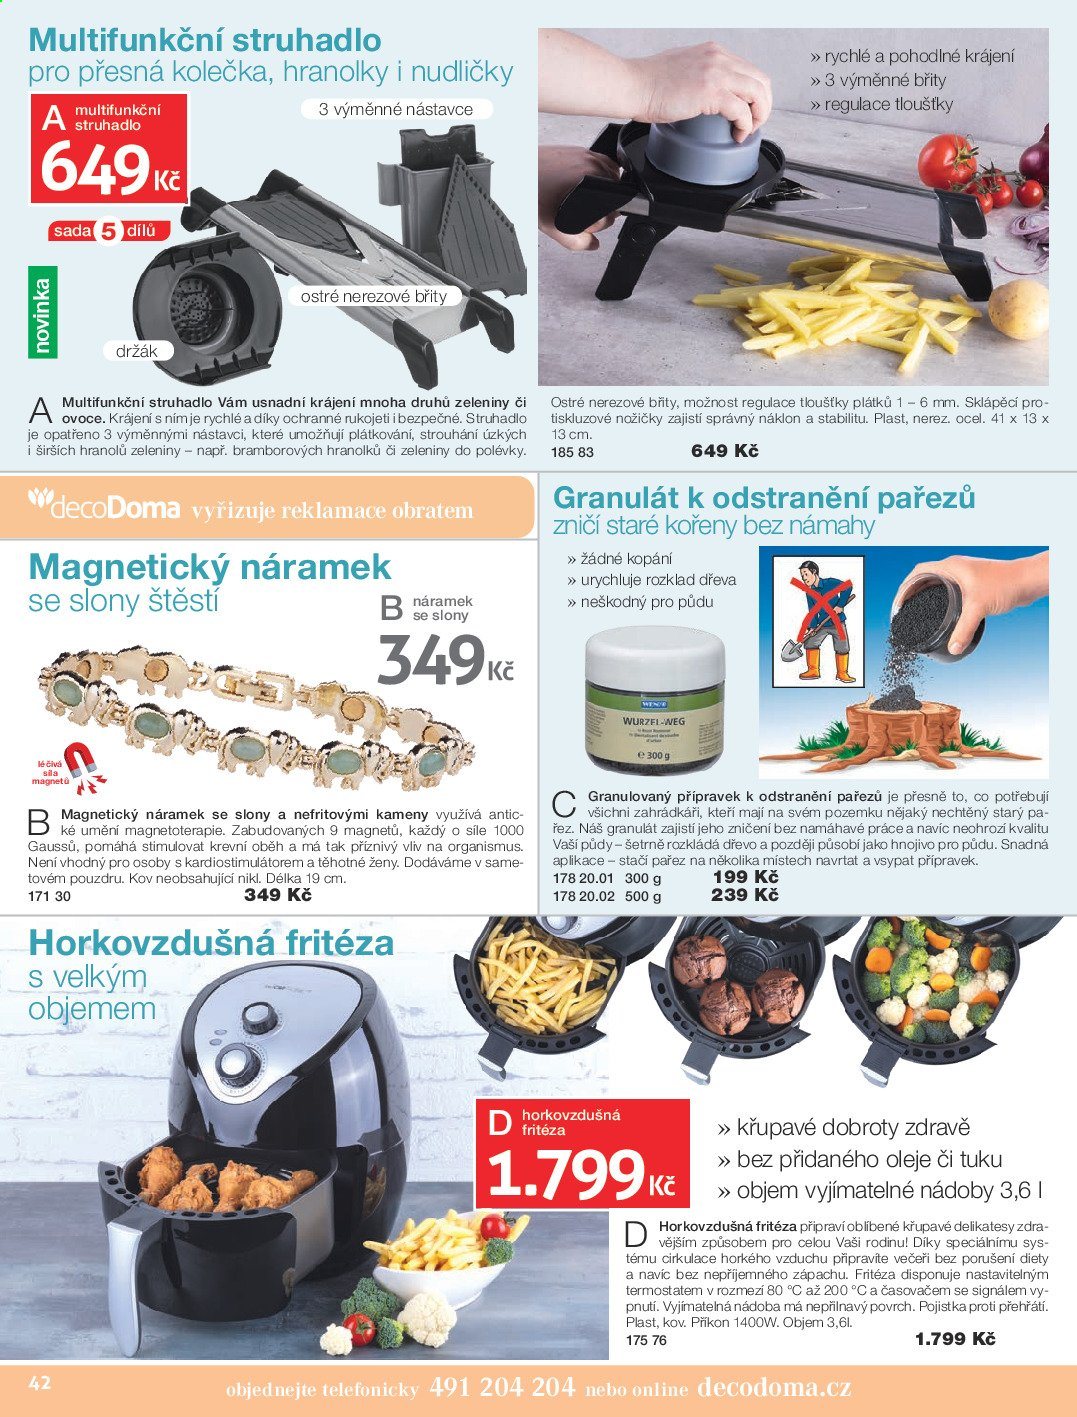 thumbnail - Leták decoDoma - Produkty v akci - struhadlo, fritéza, horkovzdušná fritéza, kolečko, magnetický náramek. Strana 40.